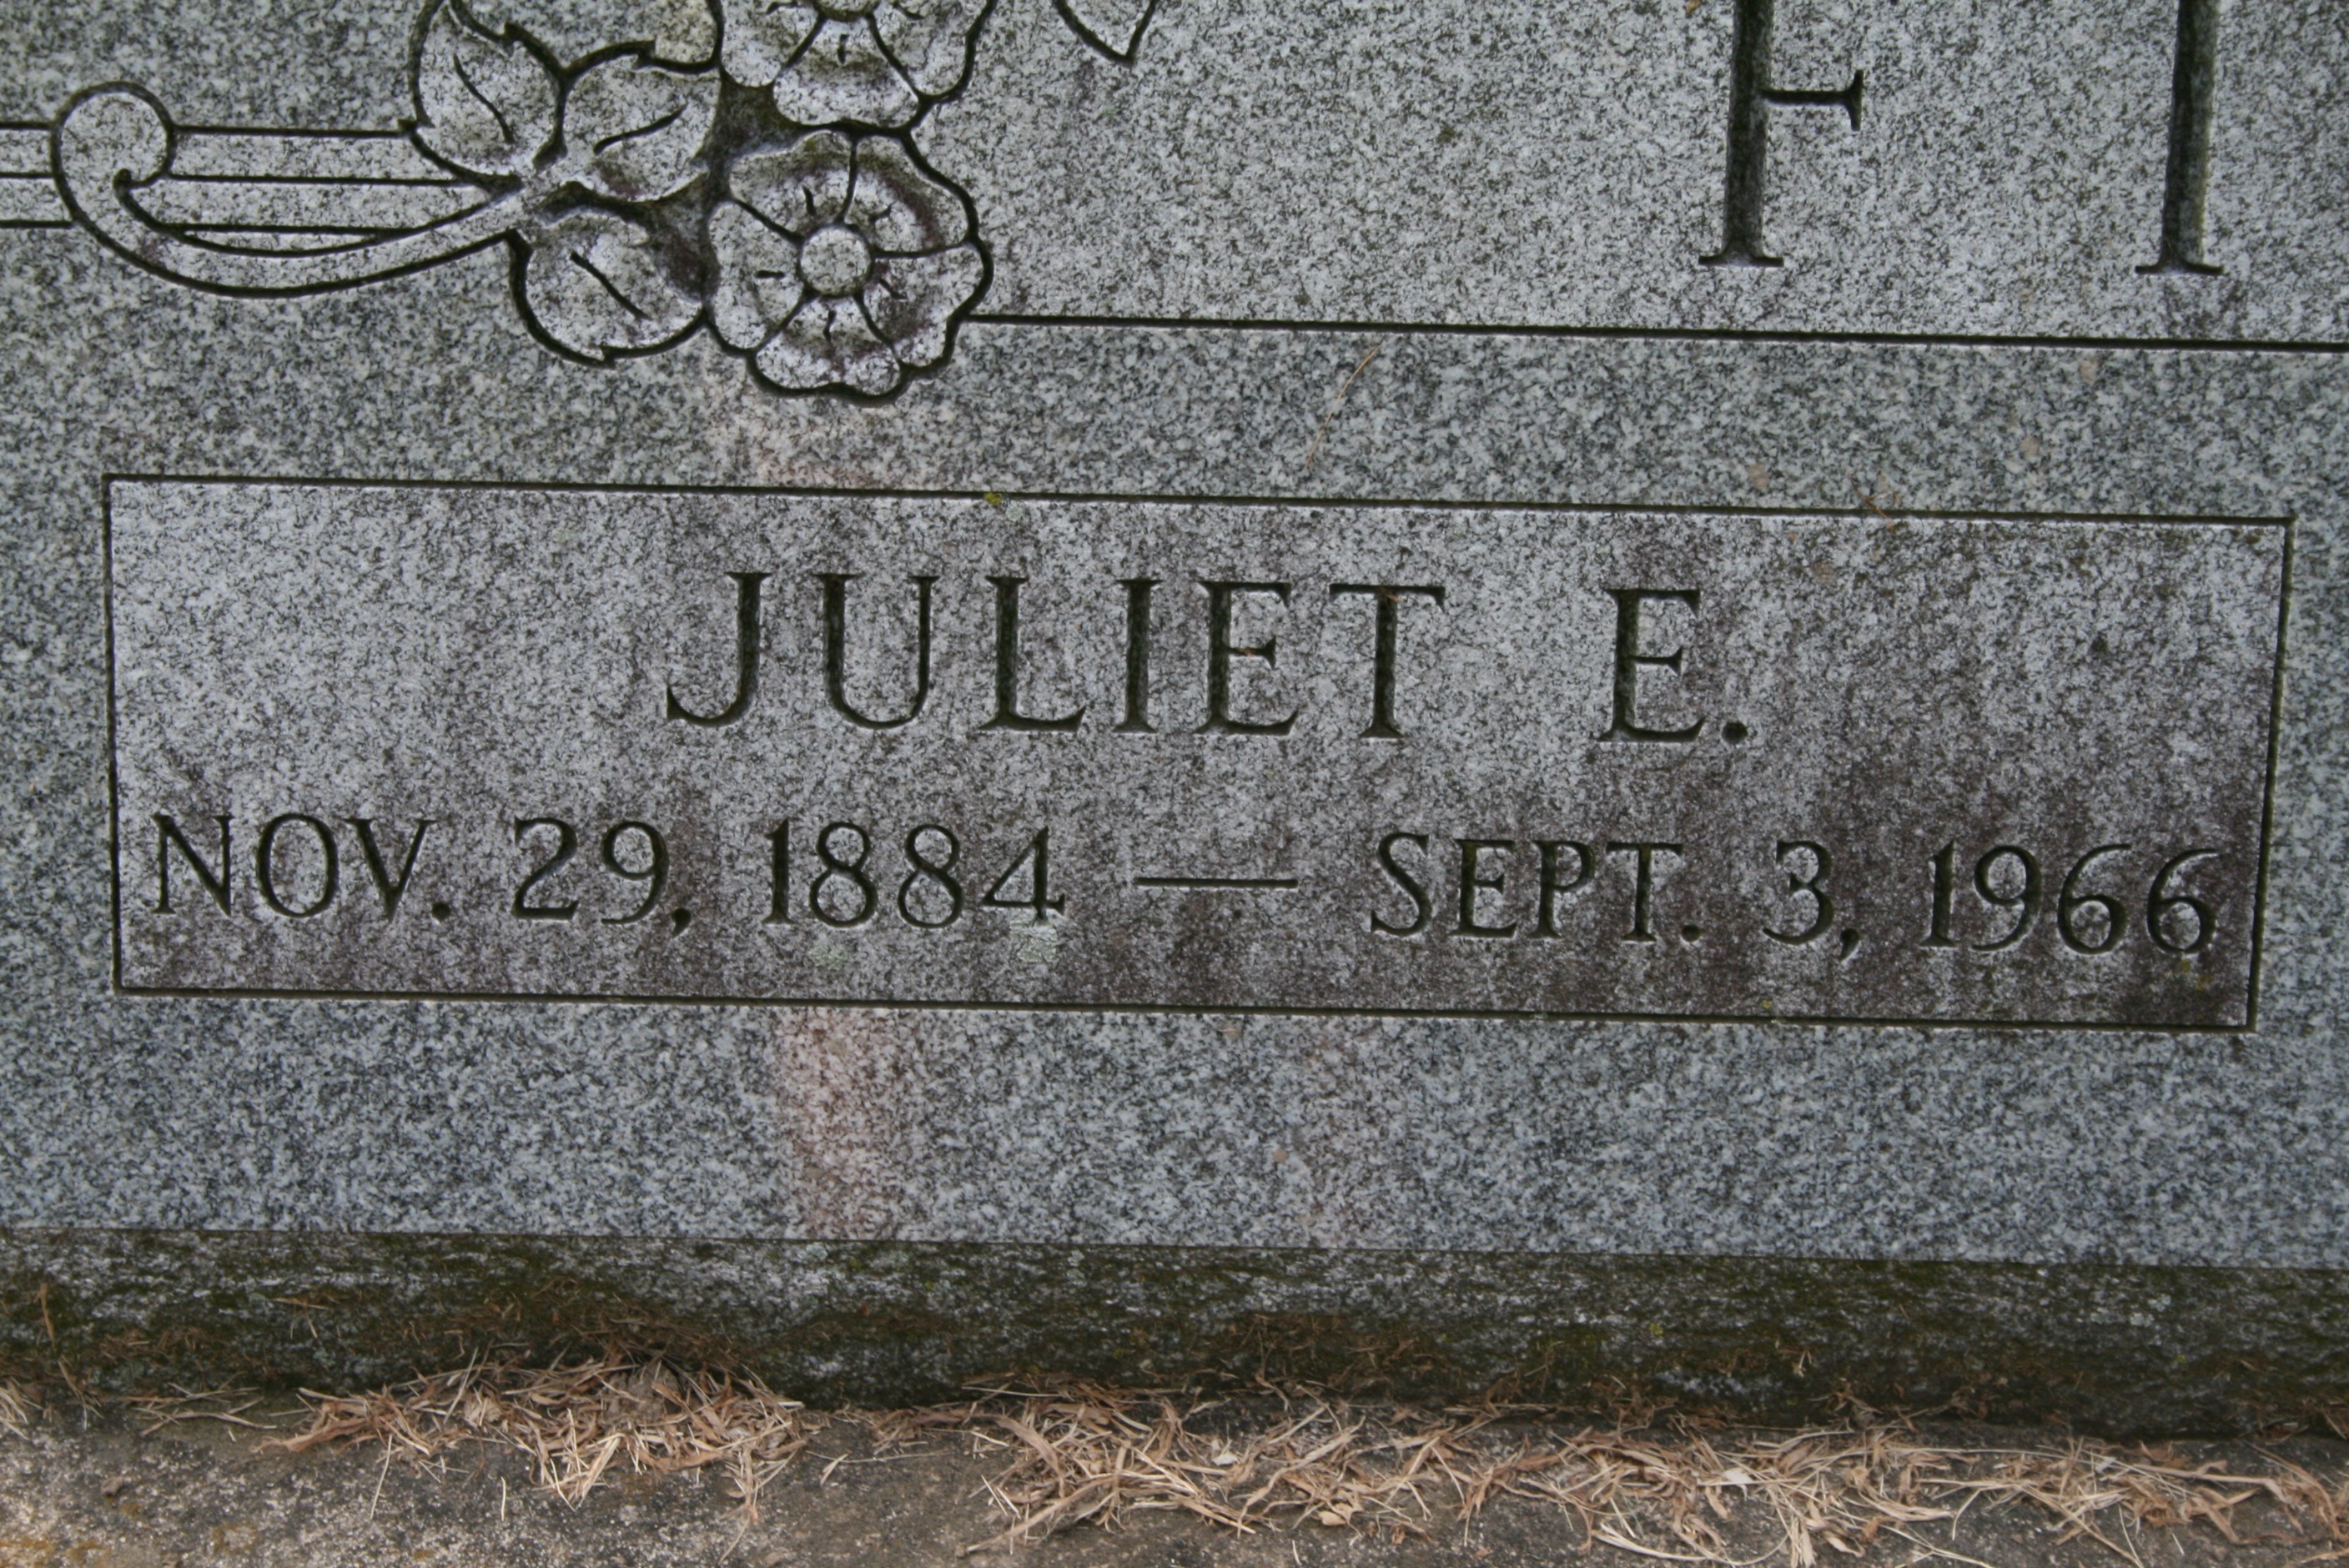 Fink, Juliet E.